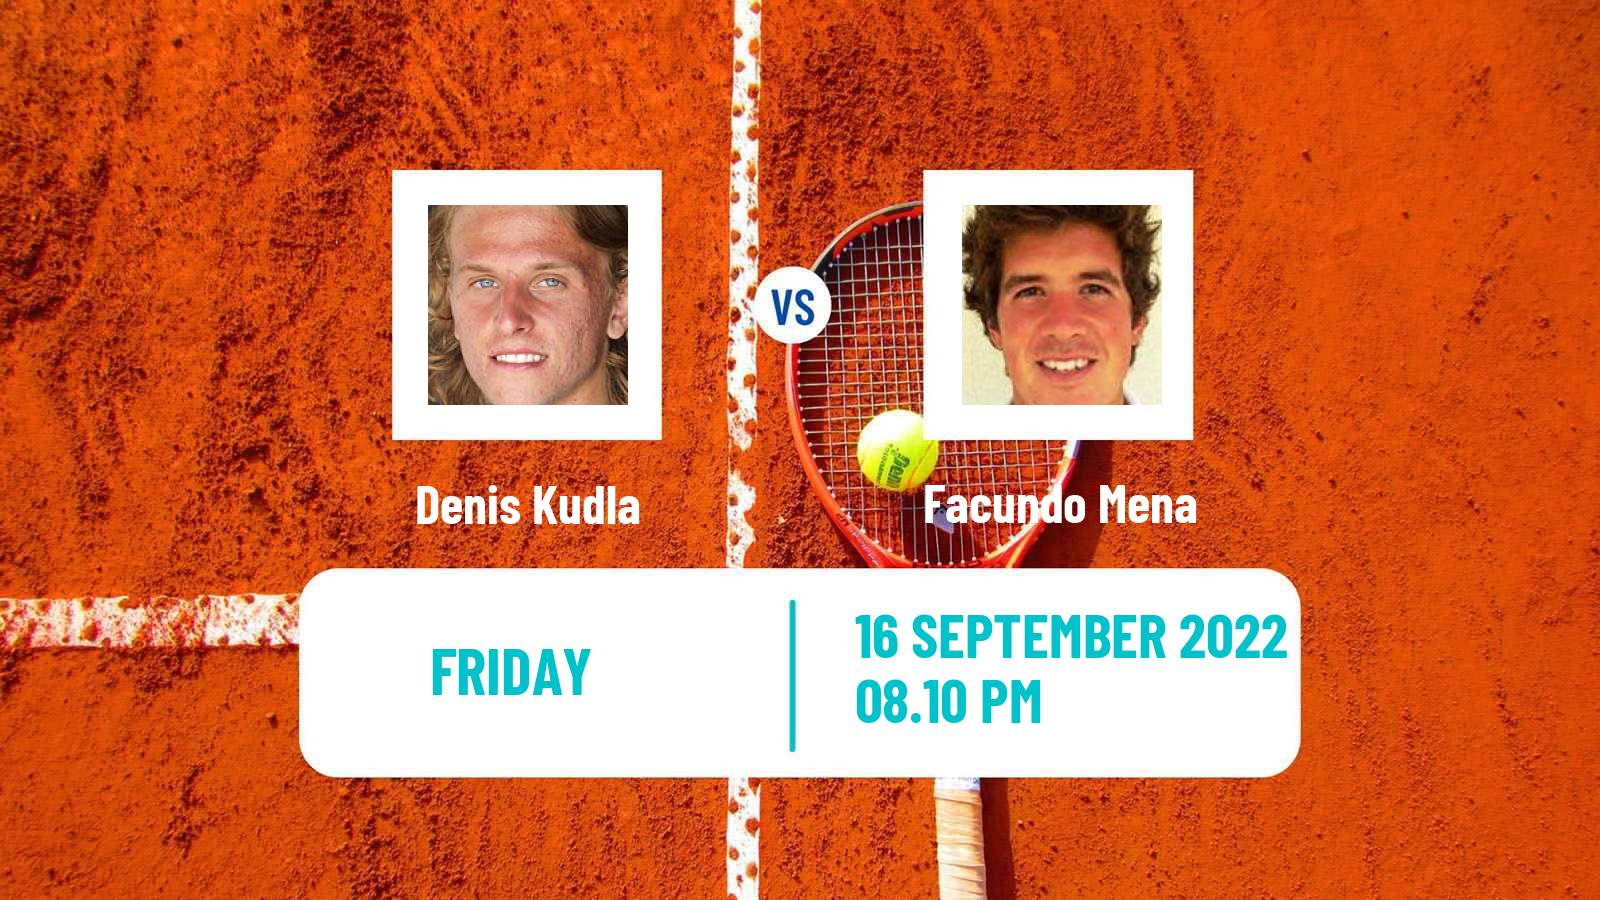 Tennis ATP Challenger Denis Kudla - Facundo Mena